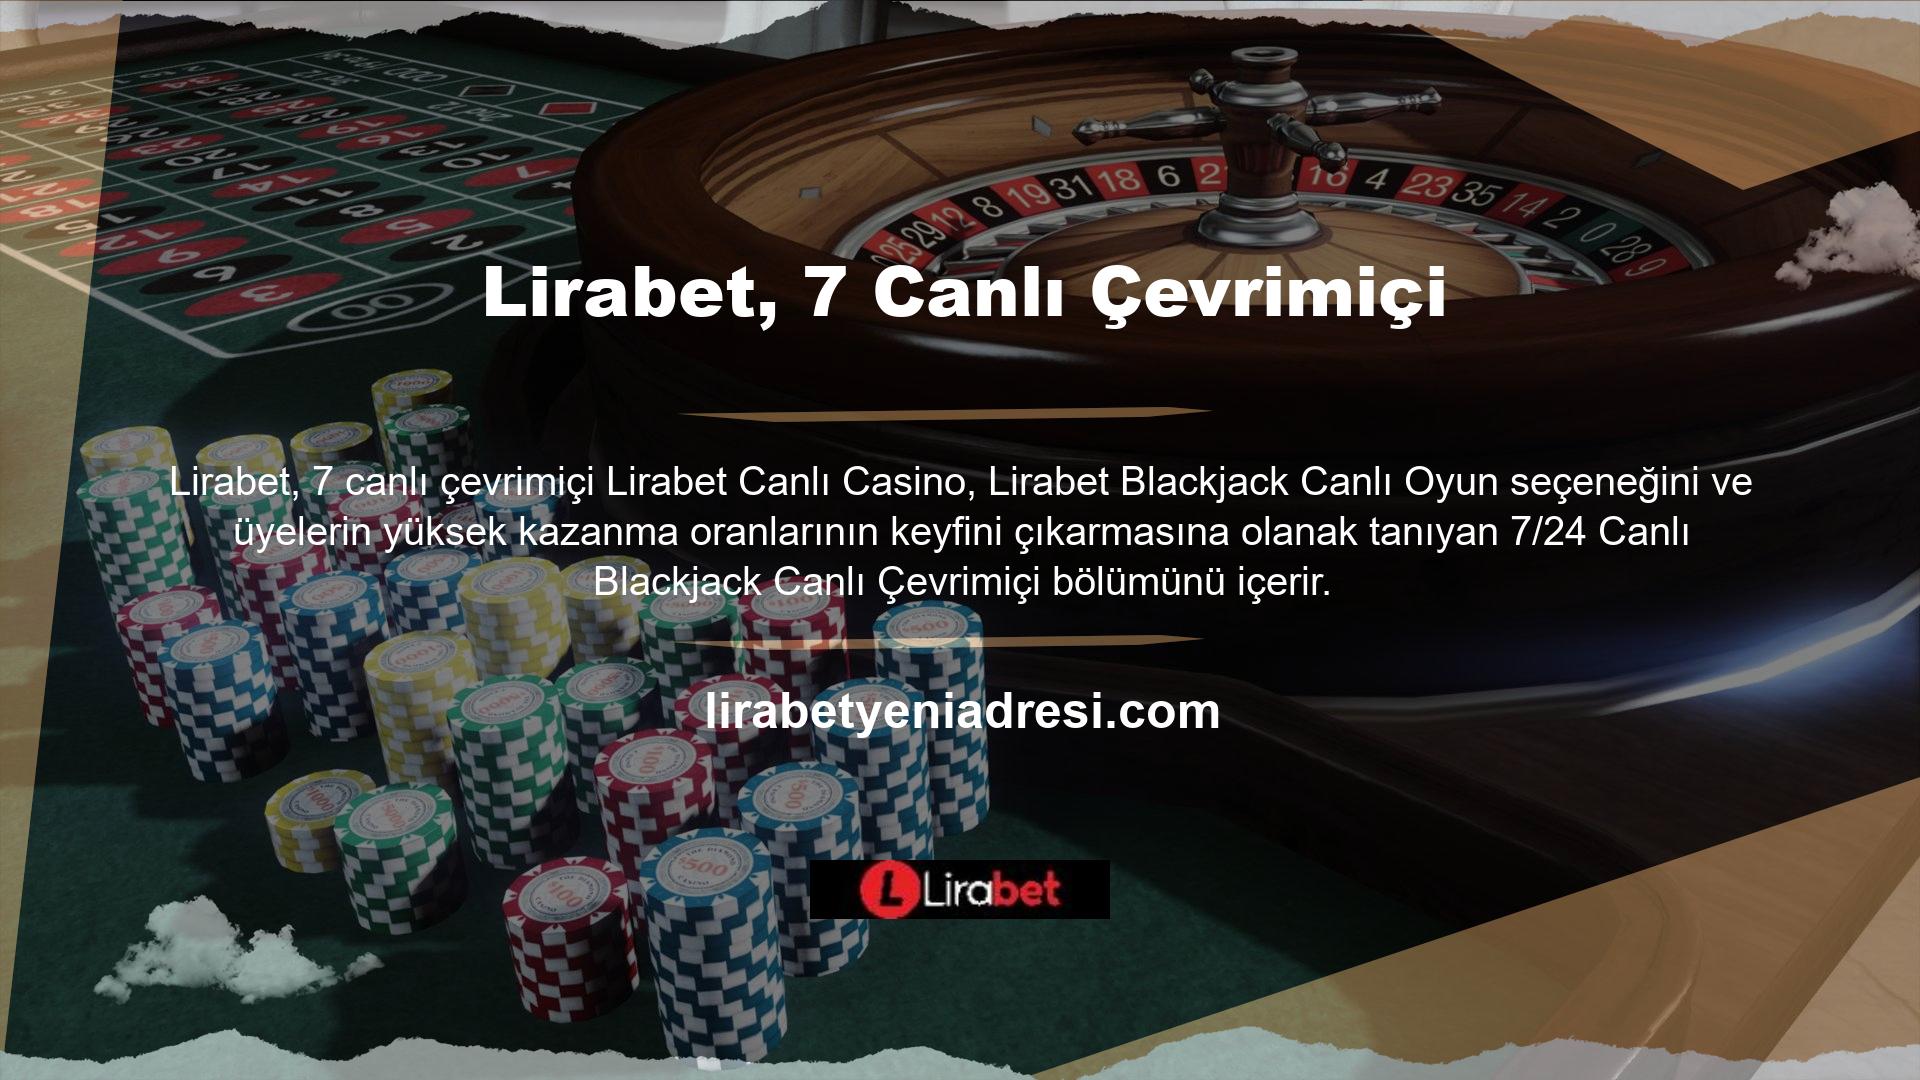 Türkiye'nin en büyük oyun alanına sahip olmanın avantajının yanı sıra blackjack tutkunlarının bir araya gelebileceği yüzlerce canlı yayın bulunmaktadır